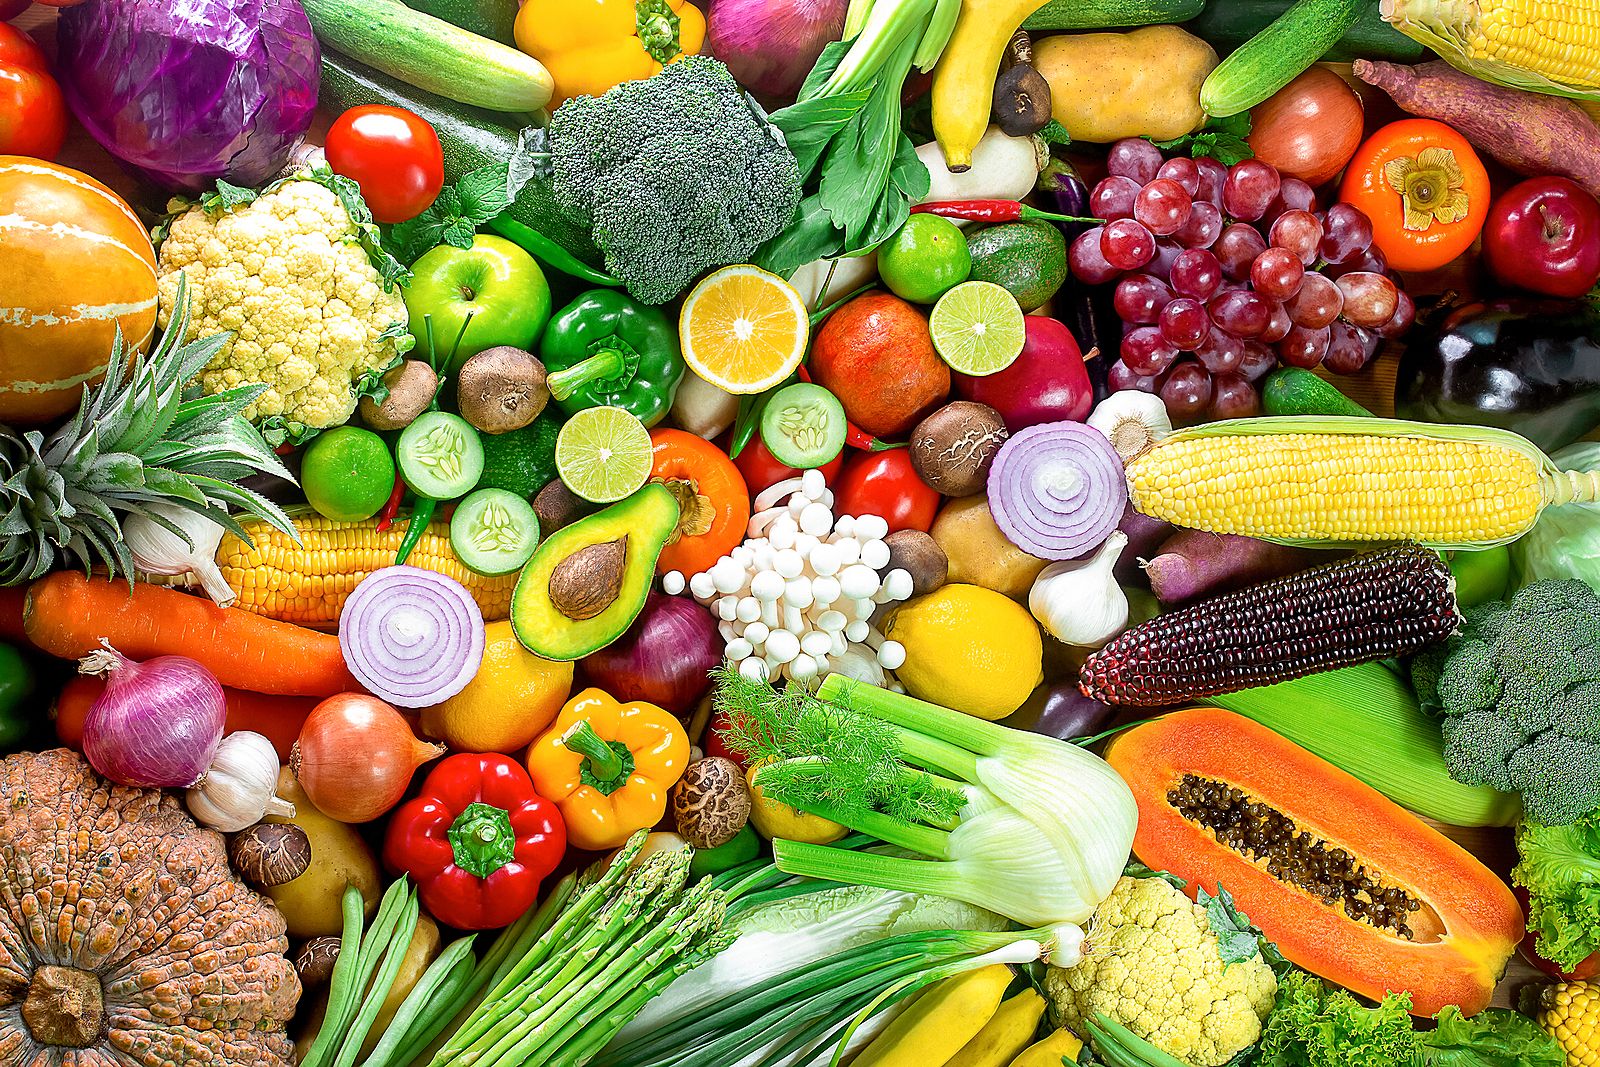 En verano: verduras y hortalizas